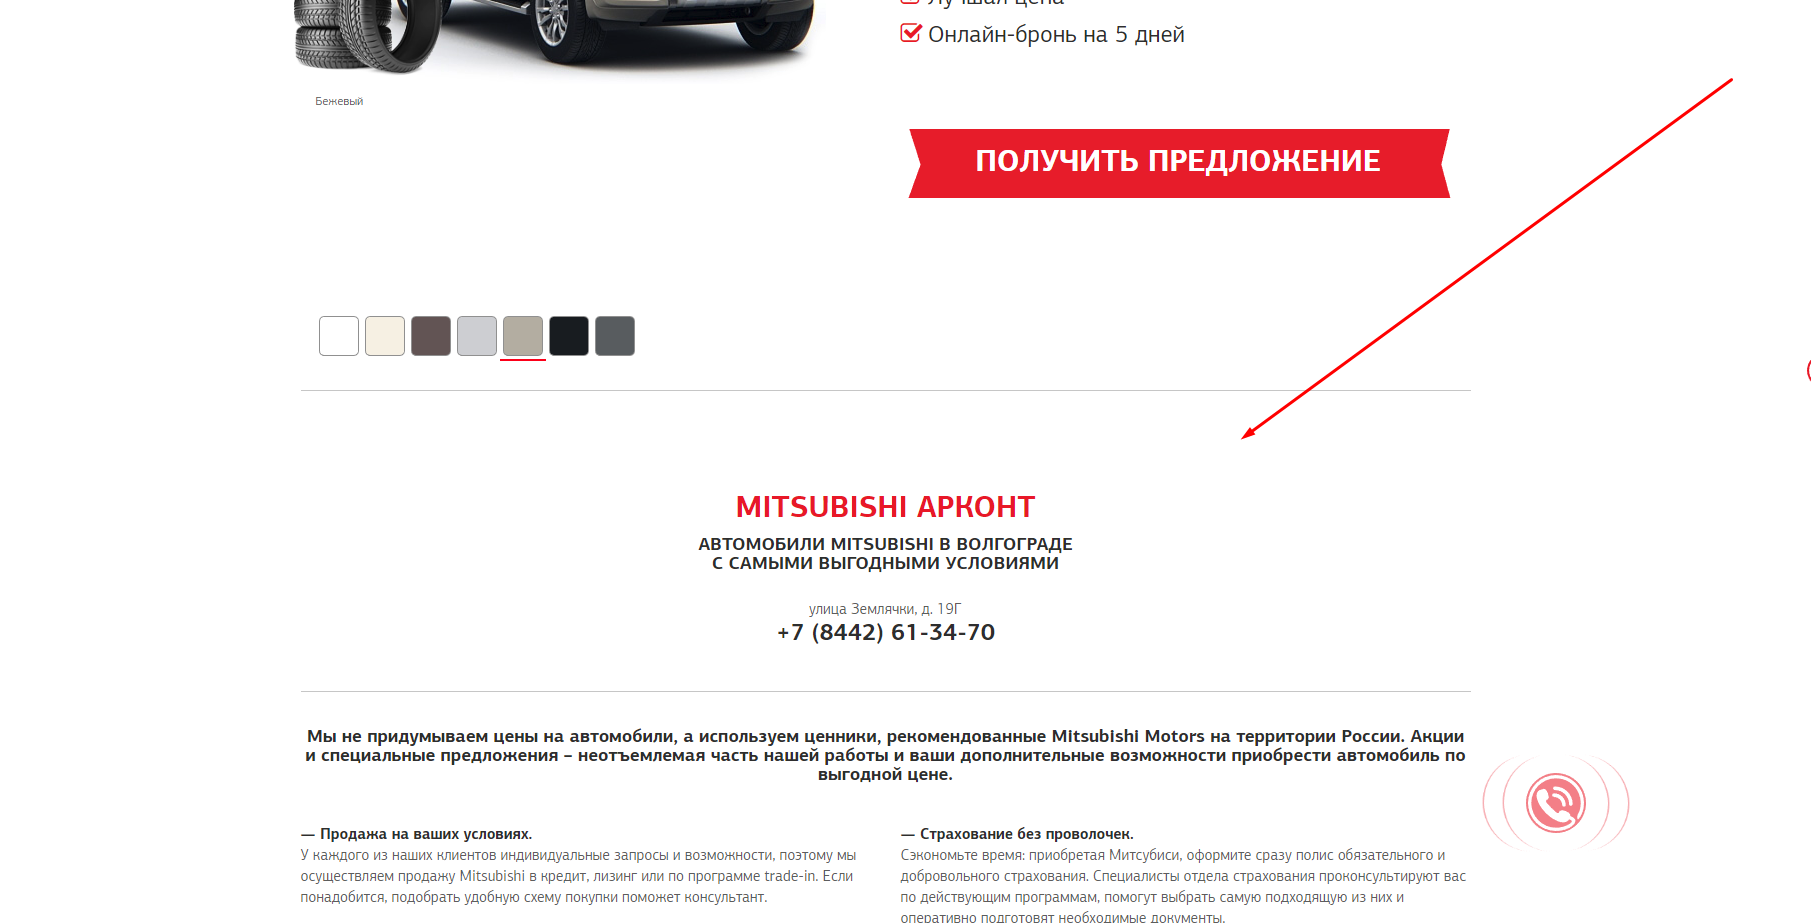 Запуск контекстной рекламы в Яндекс.Директе и Google Ads для автодилера Mitsubishi «Арконт» - рекомендации по сайту, перебить конкурентов